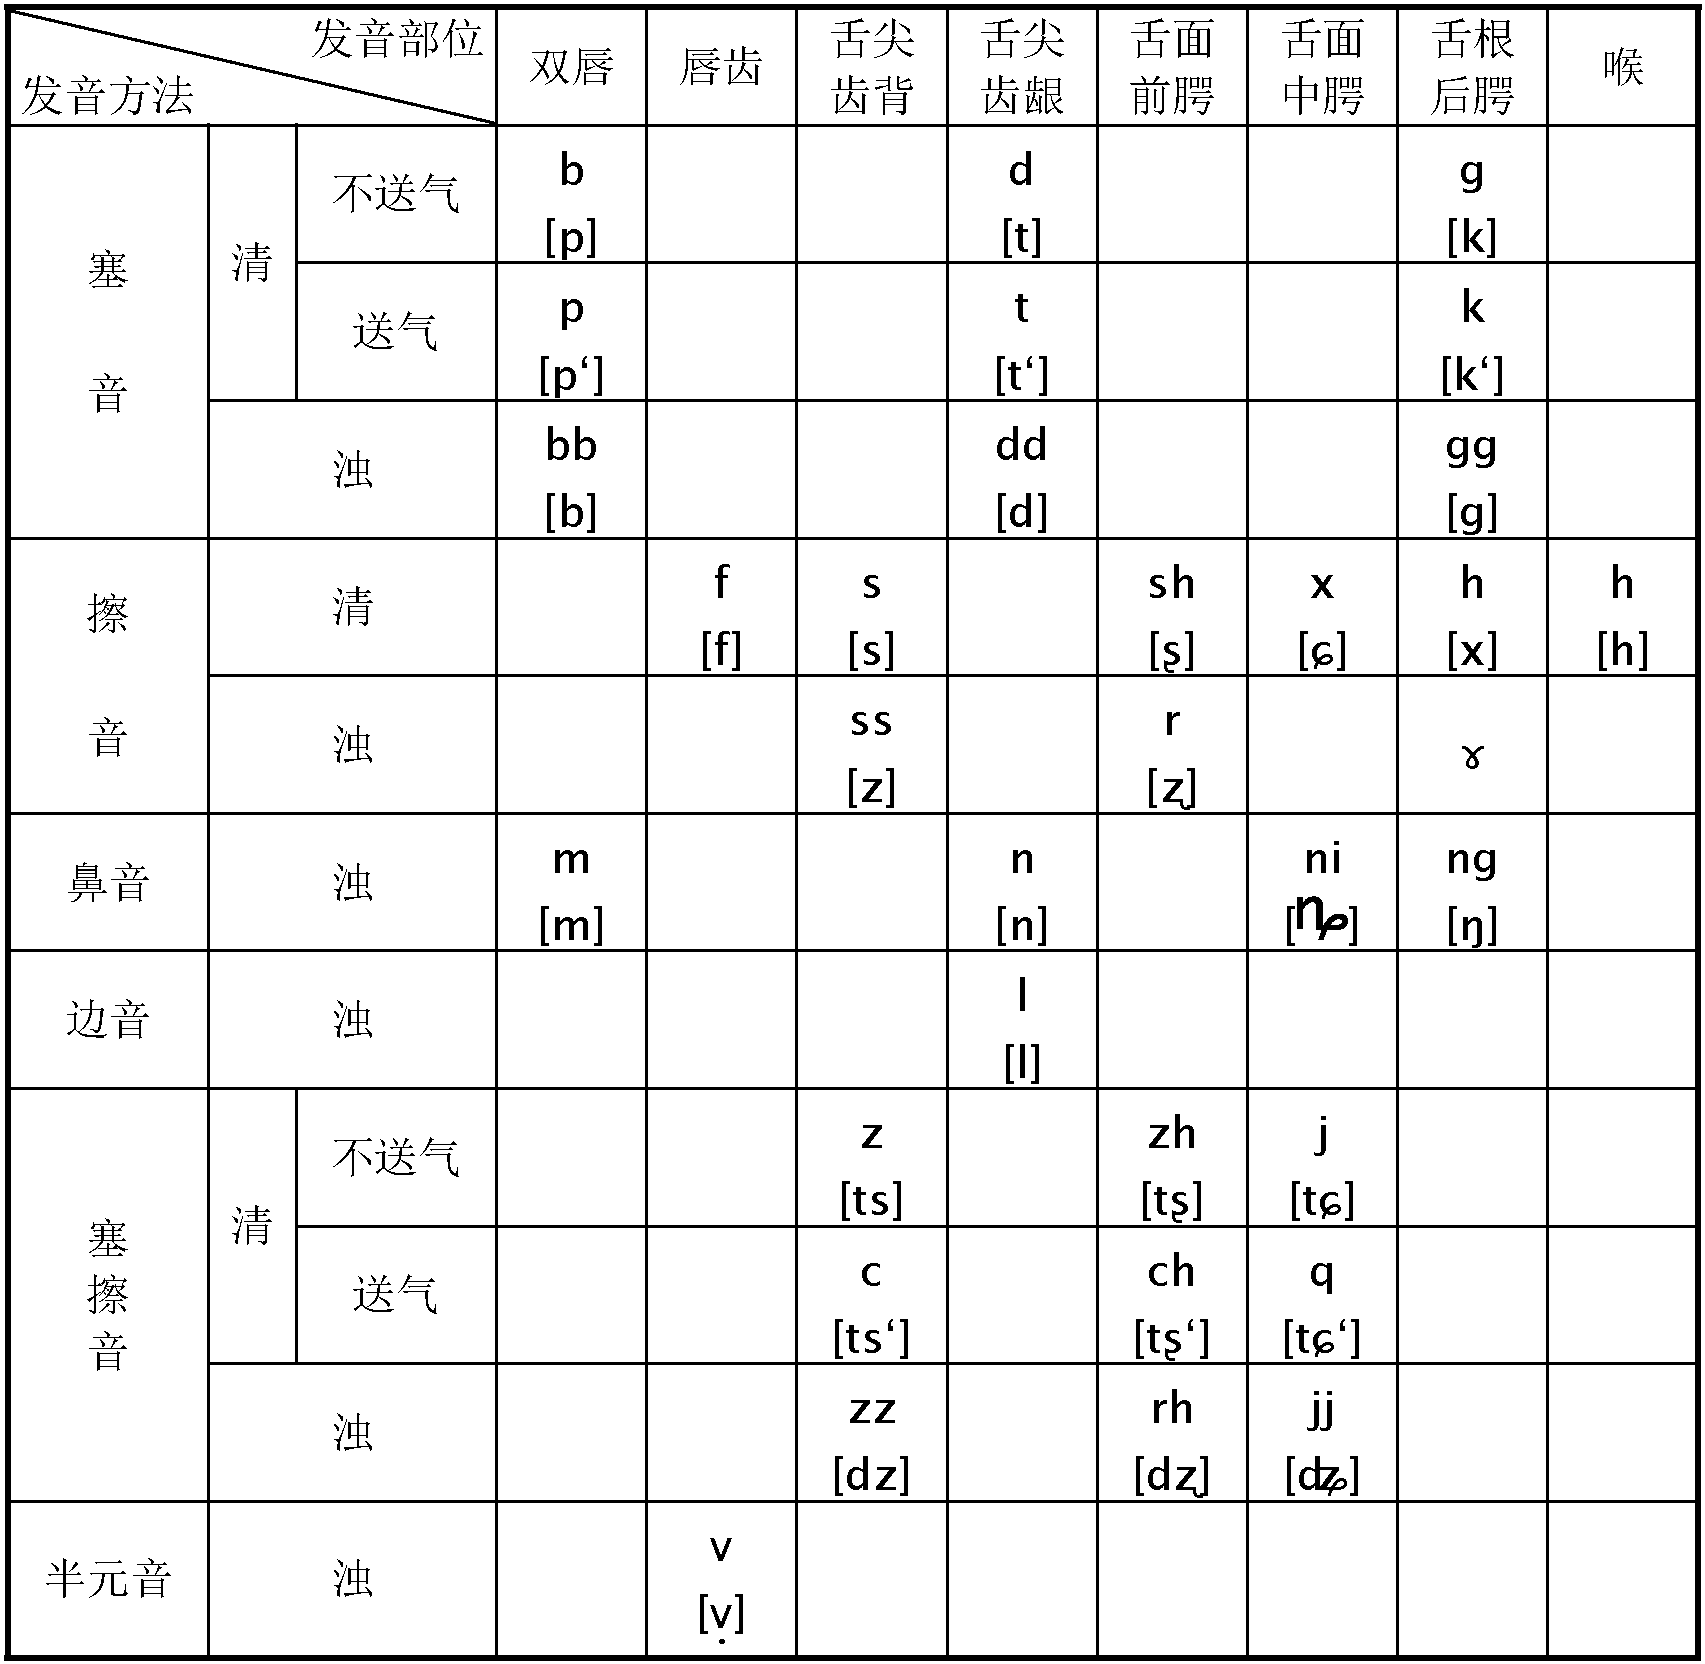 附表二 纳西拼音与国际音标对照表 ([ ]内为国际音标)